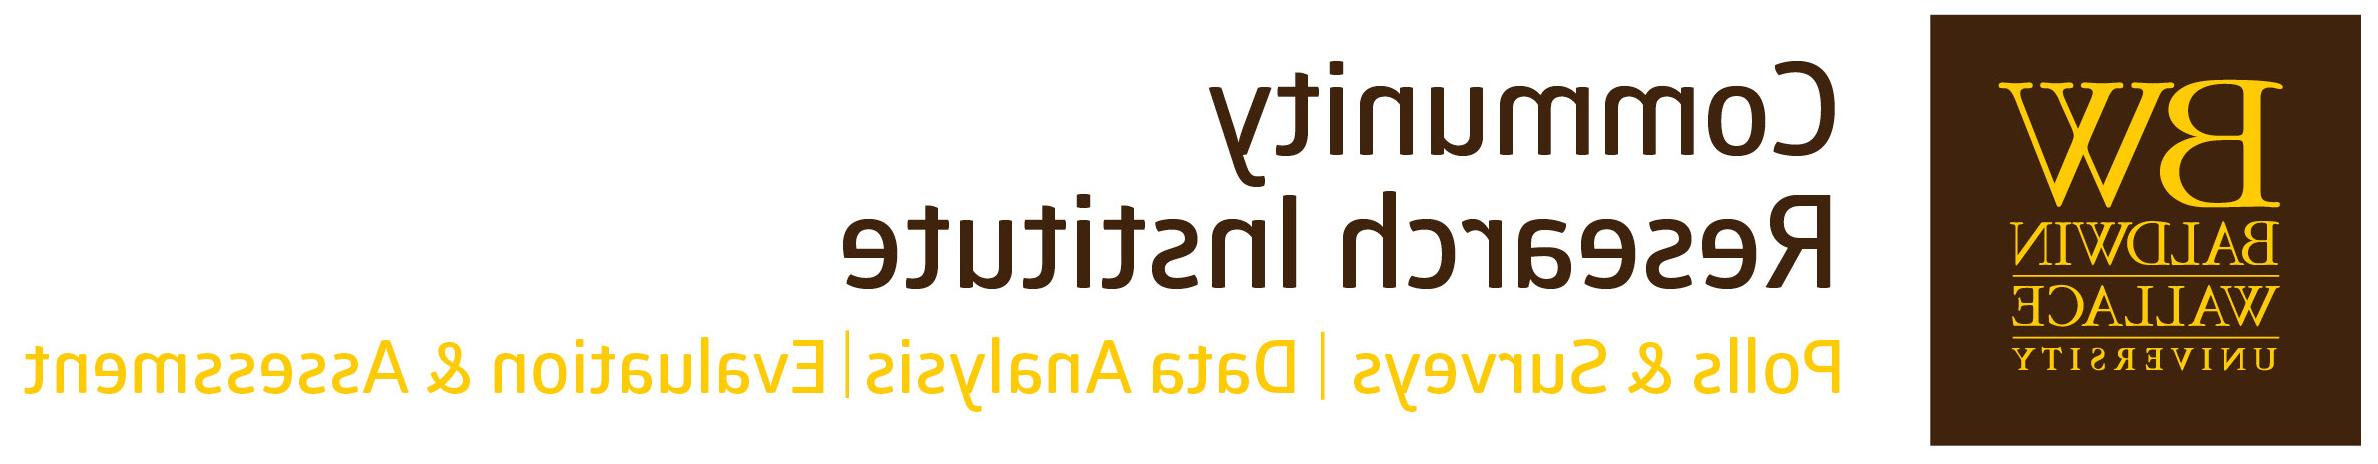 Community Research Institute logo